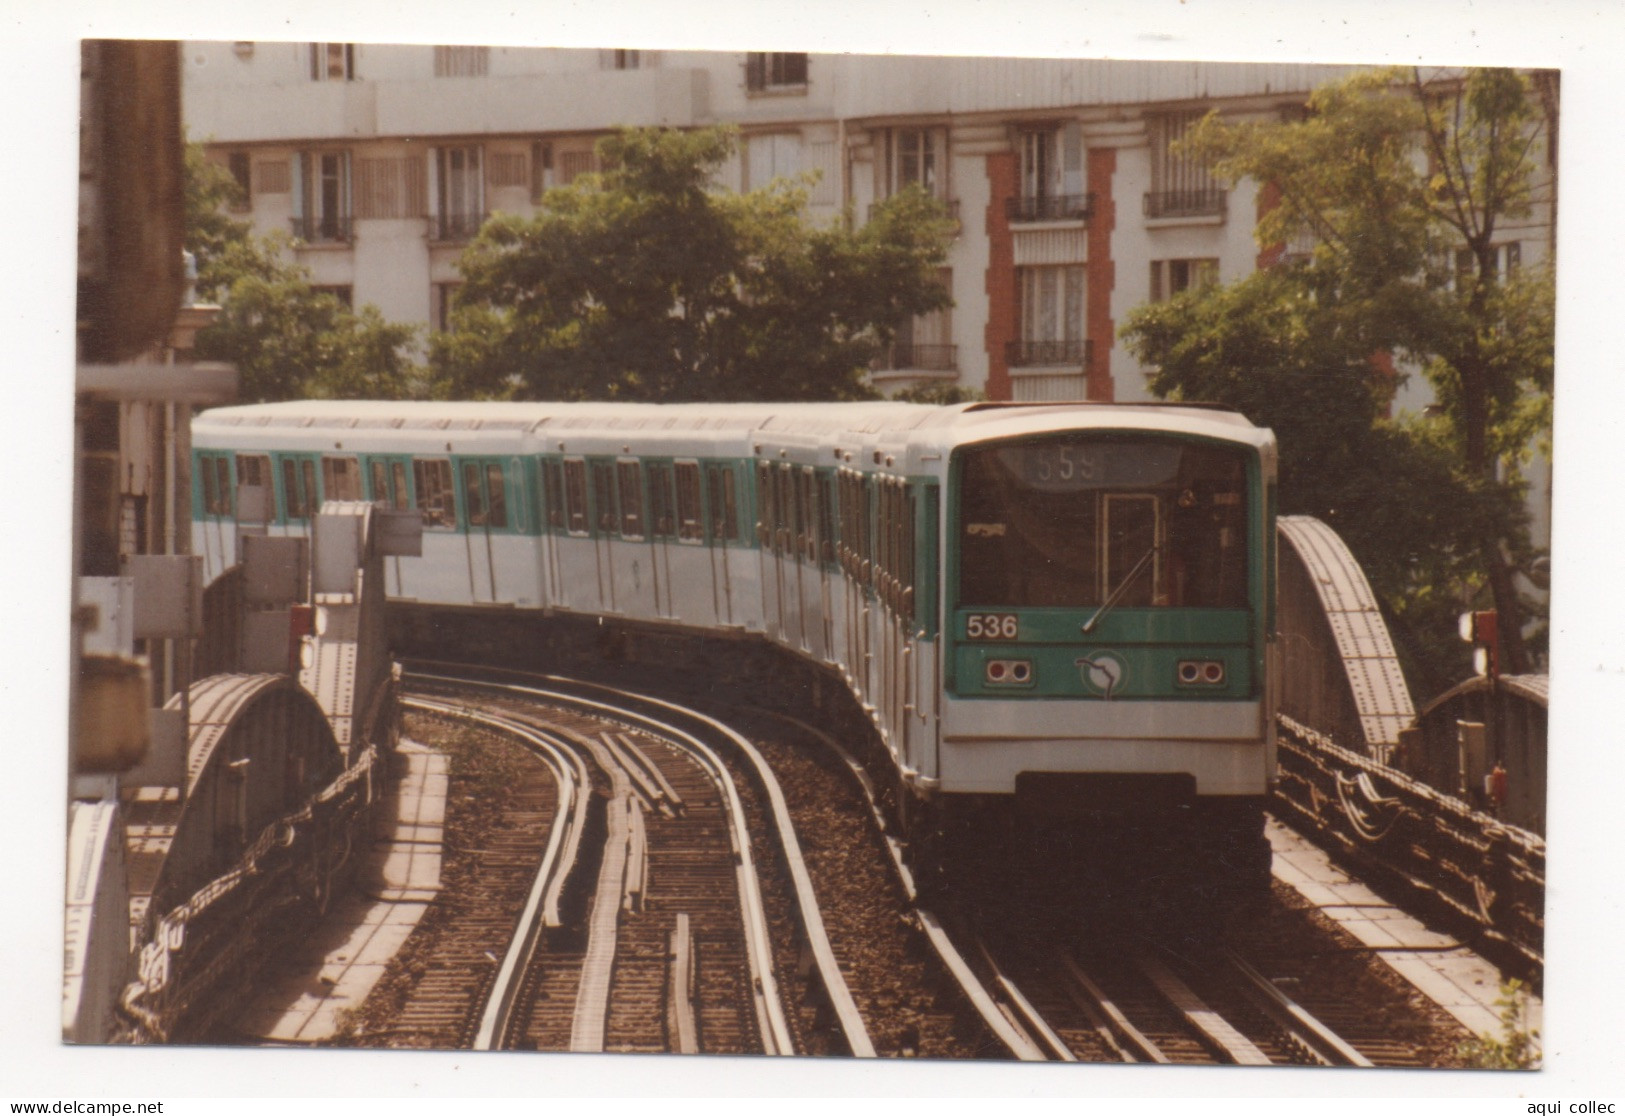 MÉTRO DE PARIS (75) . LIGNE 5. GARE D'AUSTERLITZ . 29 AOÛT 1994 - Metro